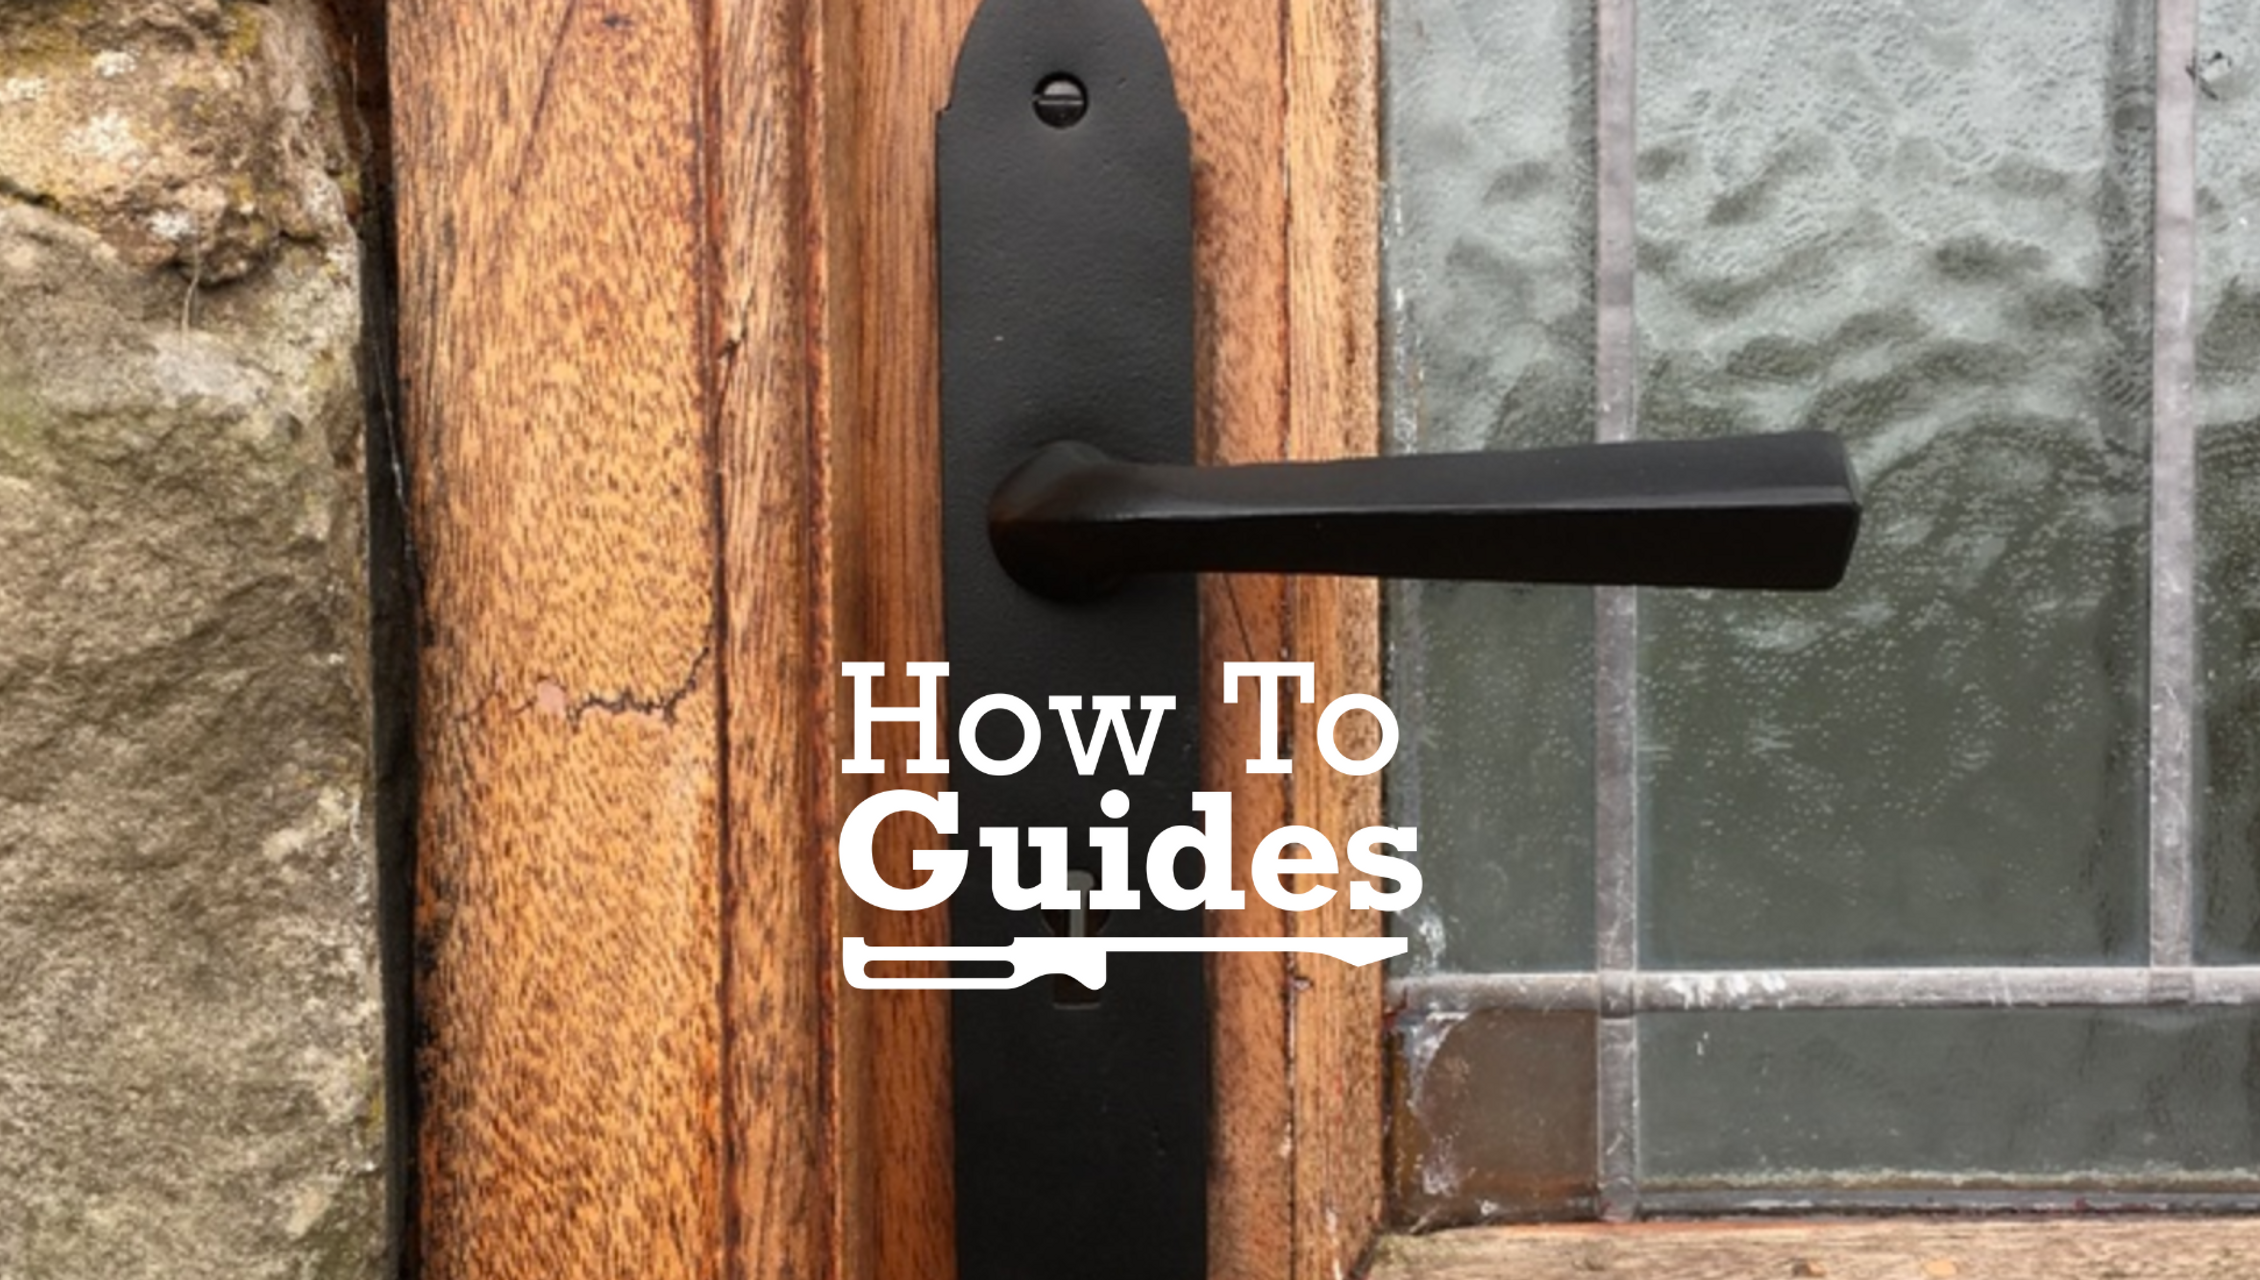 How To Fix a Stiff Door Handle